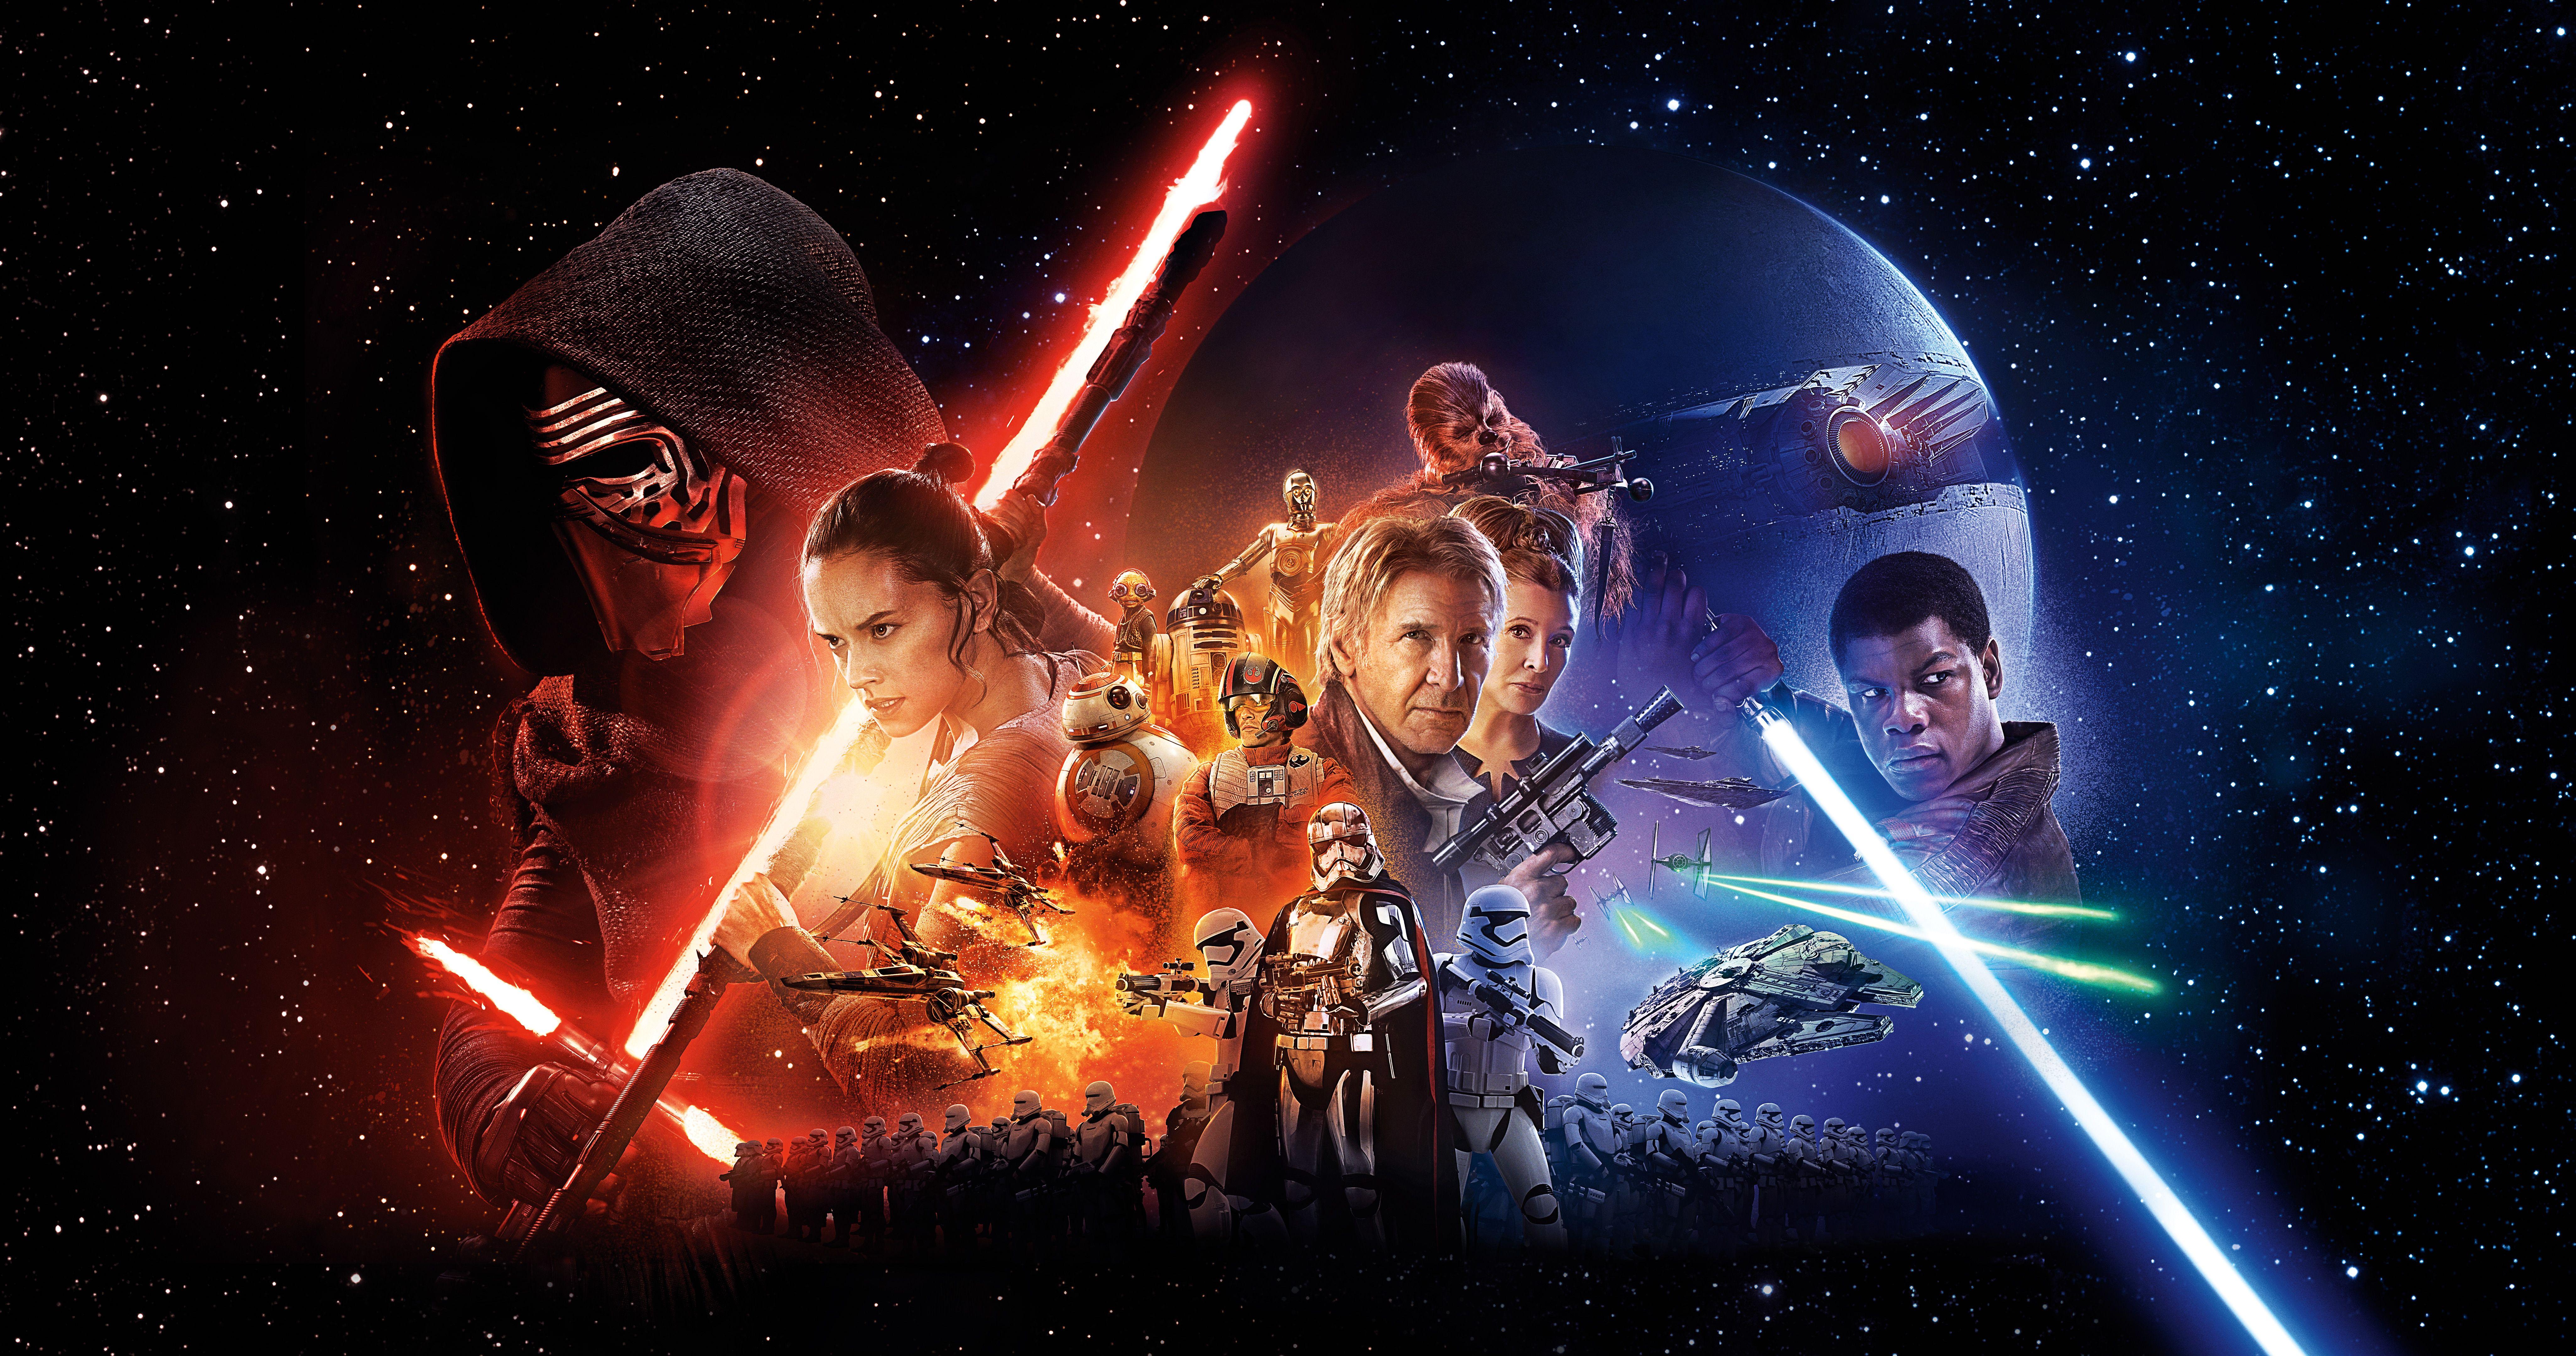 Sci Fi Star Wars 4k Ultra HD Wallpaper by Daniel Monsalve